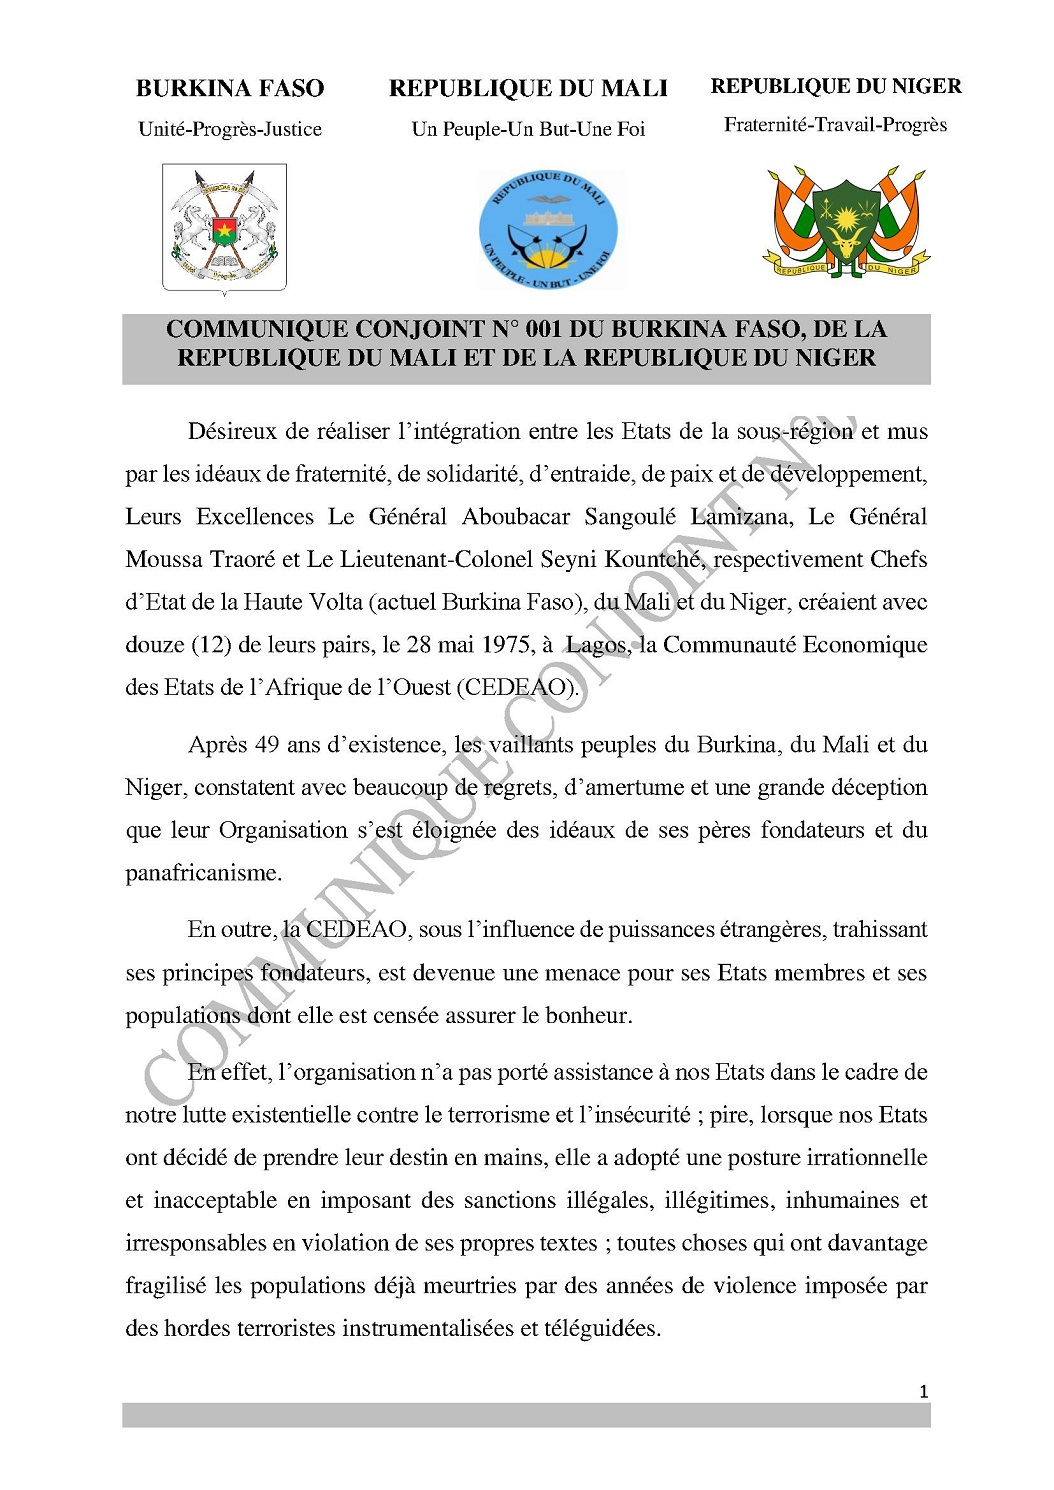 Diplomatie-Afrique de l’Ouest : Burkina Faso, le Mali et le Niger quittent la CEDEAO